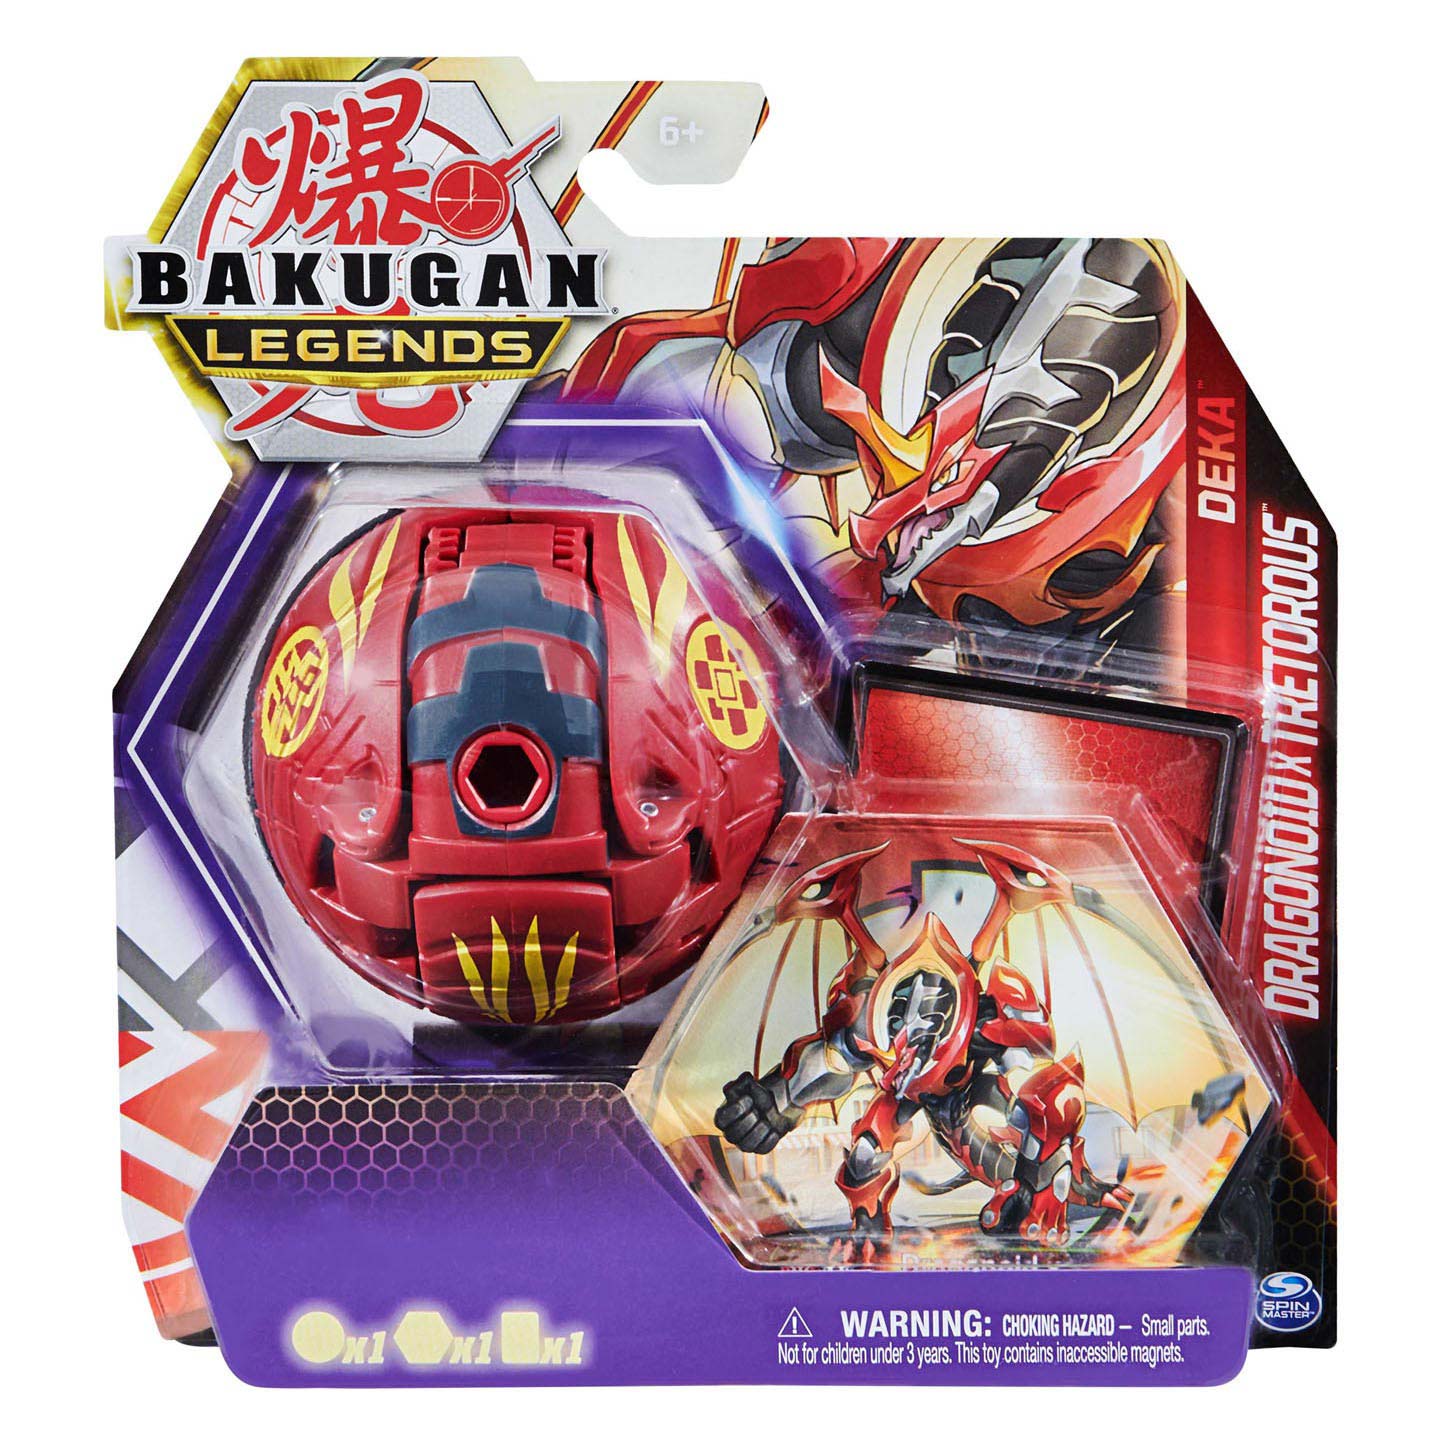 Bakugan Legends (S5) – Deka Bakugan